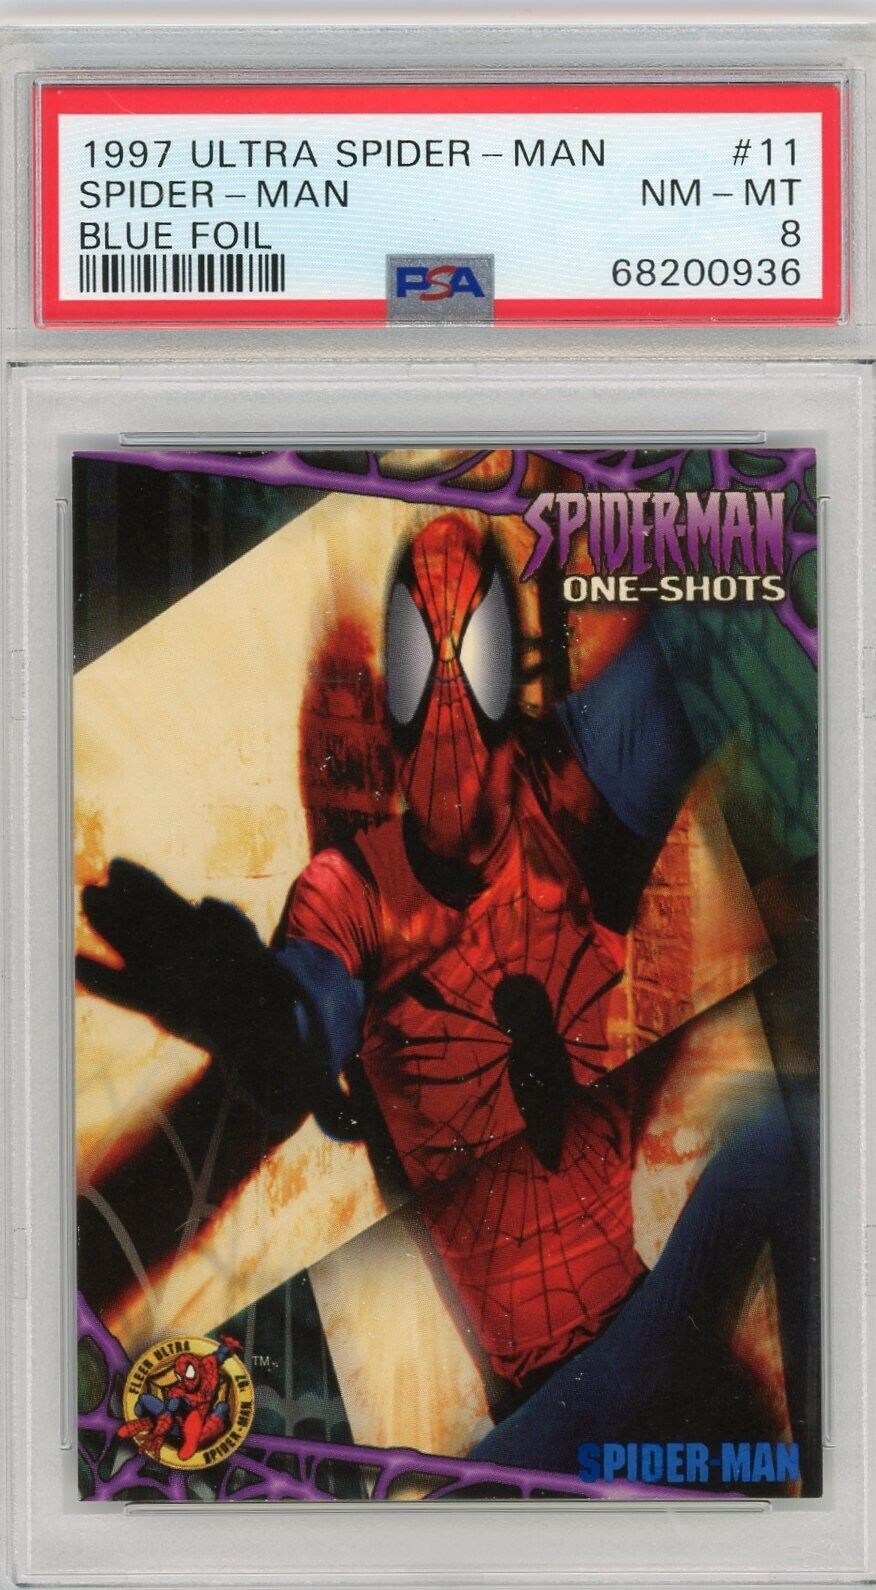 1997 Fleer Ultra Marvel One-Shots Blue Foil Spider-Man #11 PSA 8